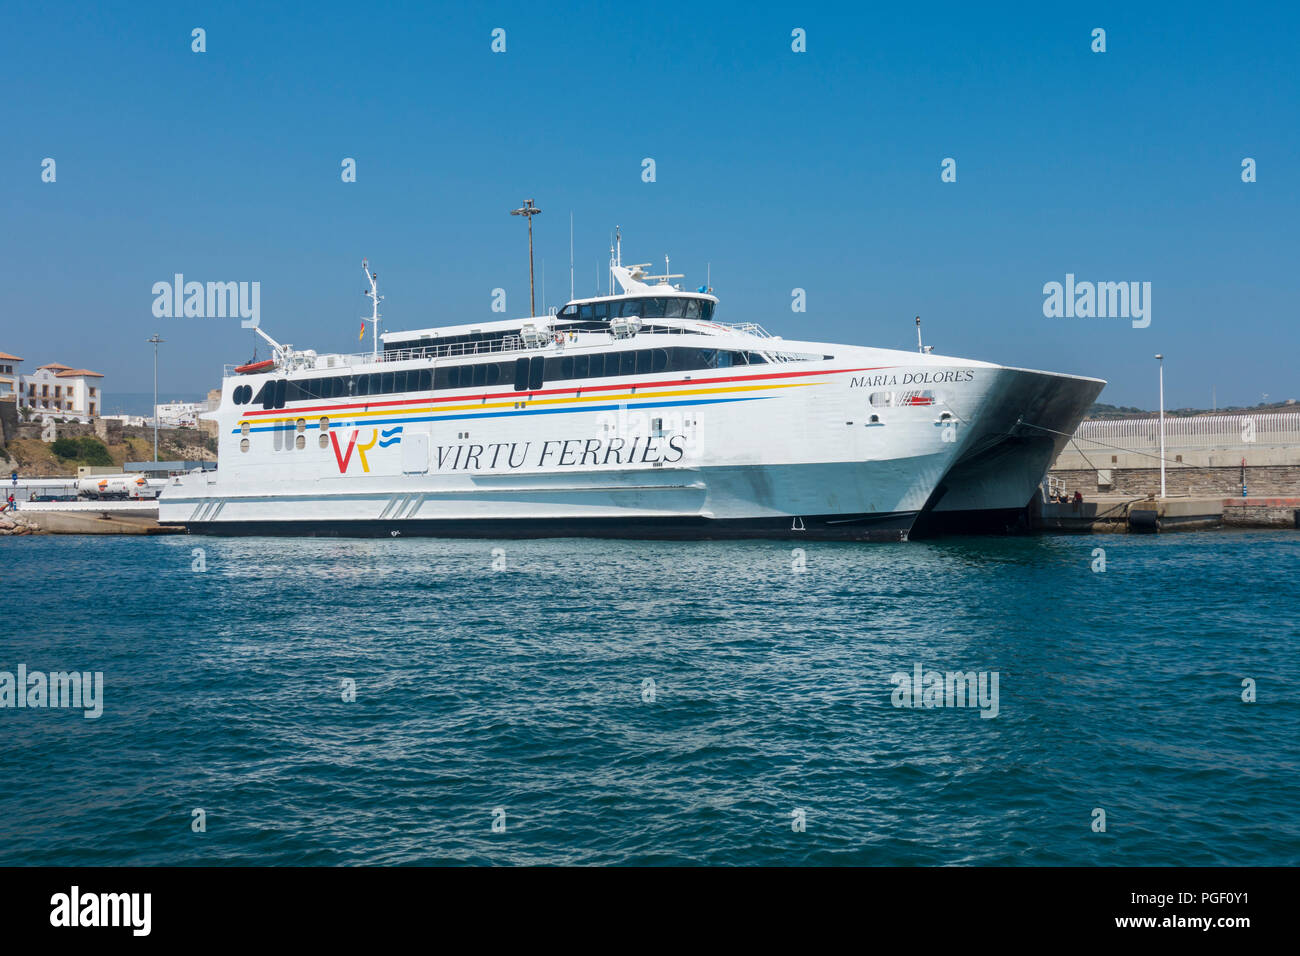 Ferry Port à Tarifa, Virtu Ferries, services aux passagers entre l'Espagne et le Maroc, l'Afrique du Nord, la Costa de la Luz, Andalousie, espagne. Banque D'Images